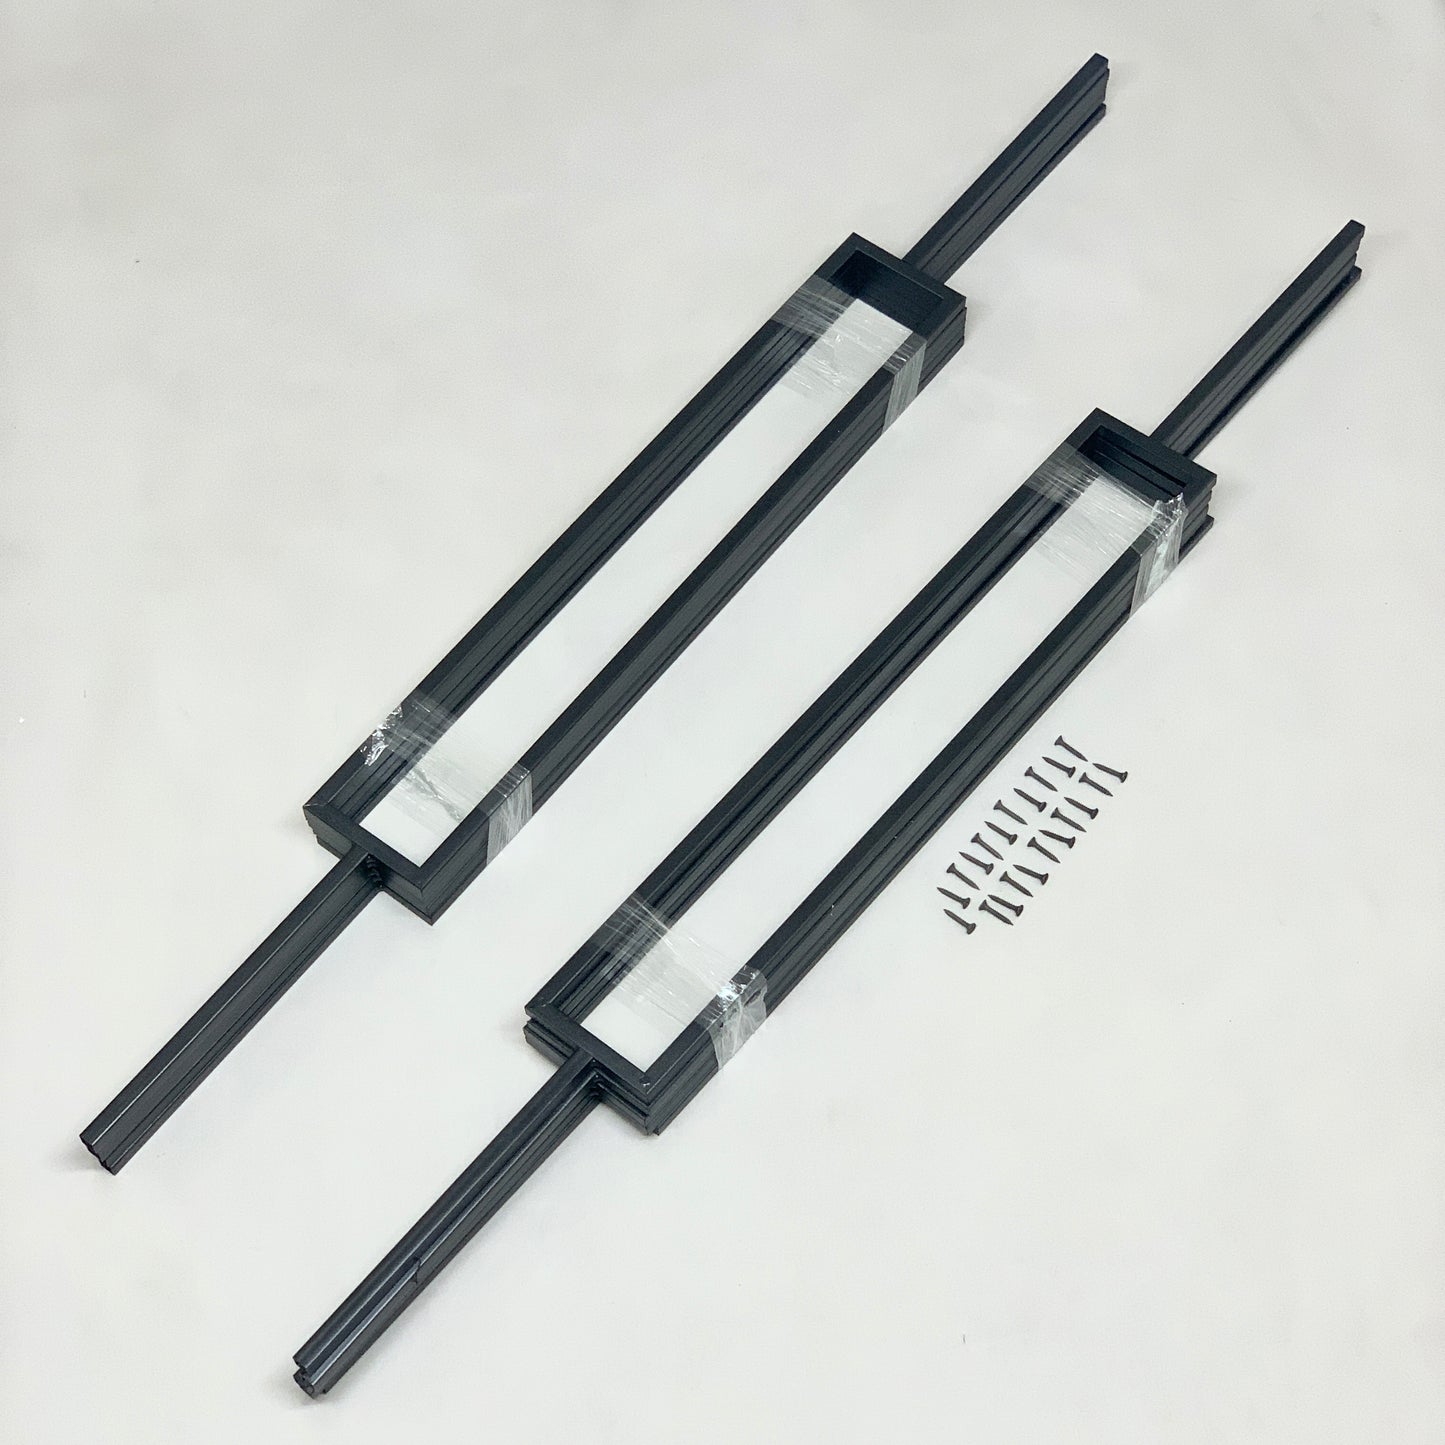 VEVOR Deck Balusters, 10 Pack Metal Deck Spindles, 44"x0.5" (New)